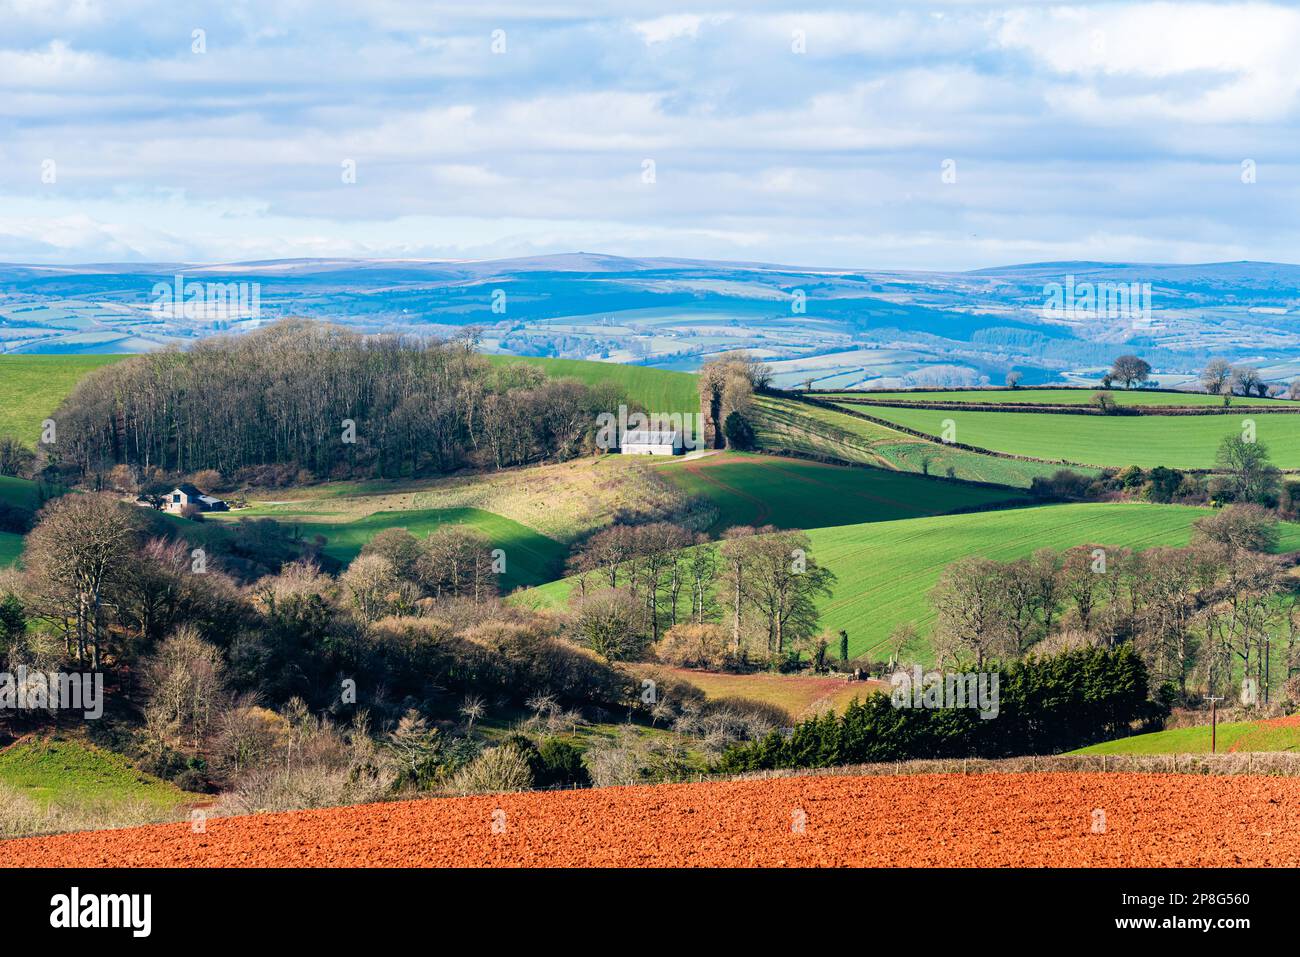 Champs et terres agricoles au printemps d'un drone, Devon, Angleterre, Europe Banque D'Images